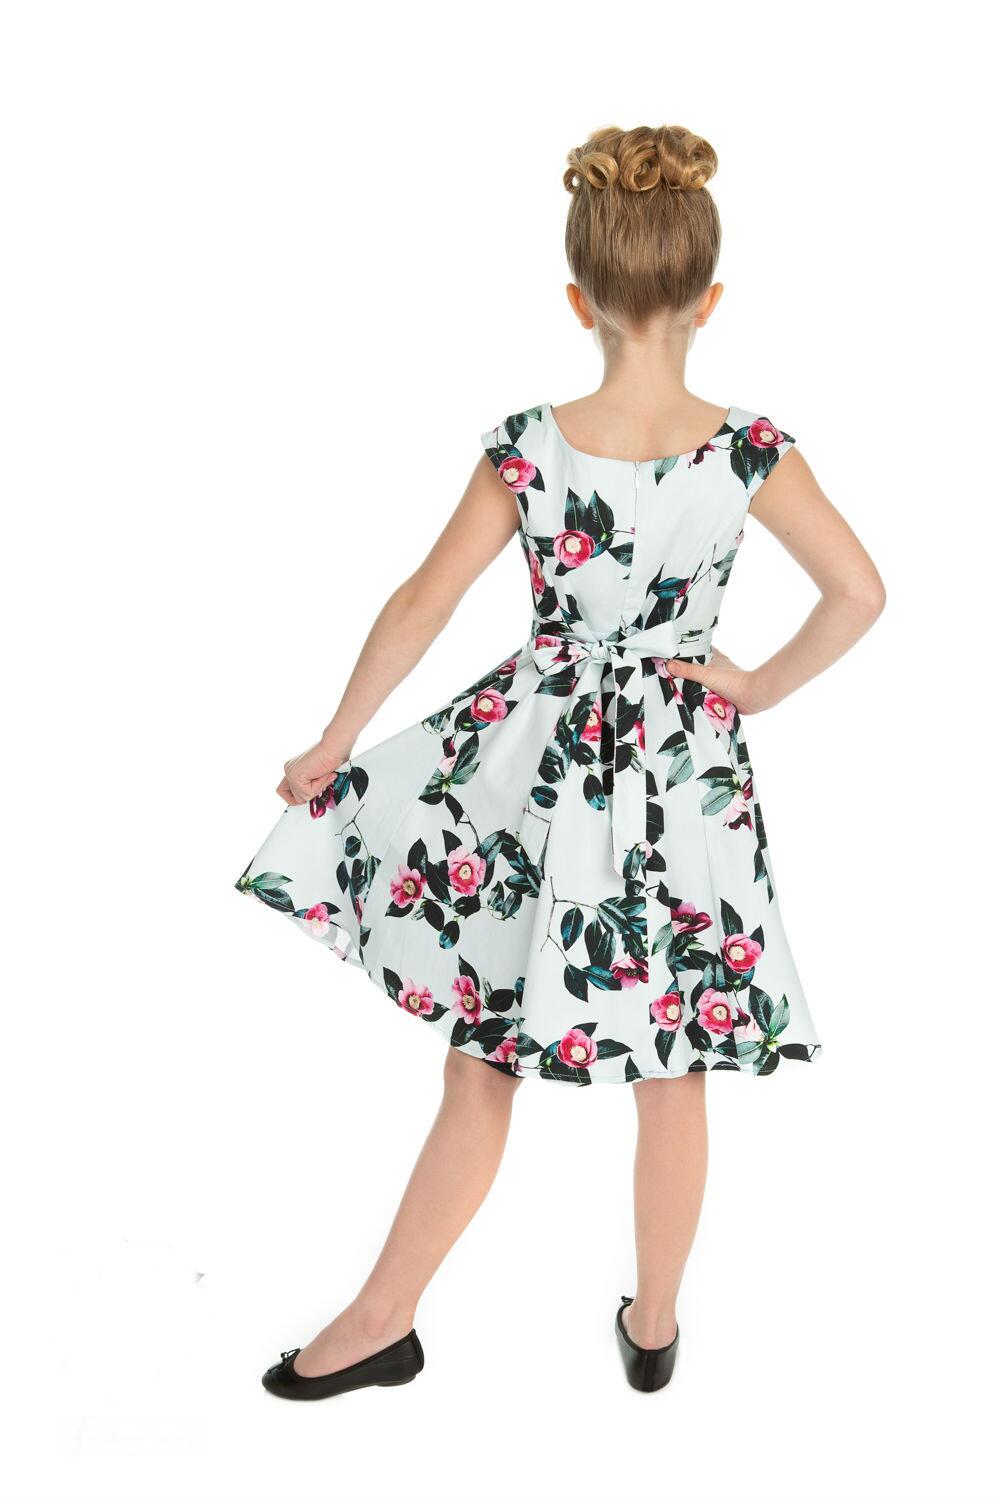 børste underholdning Slange Køb Mademoiselle kjole til børn - Price: 250,00,-